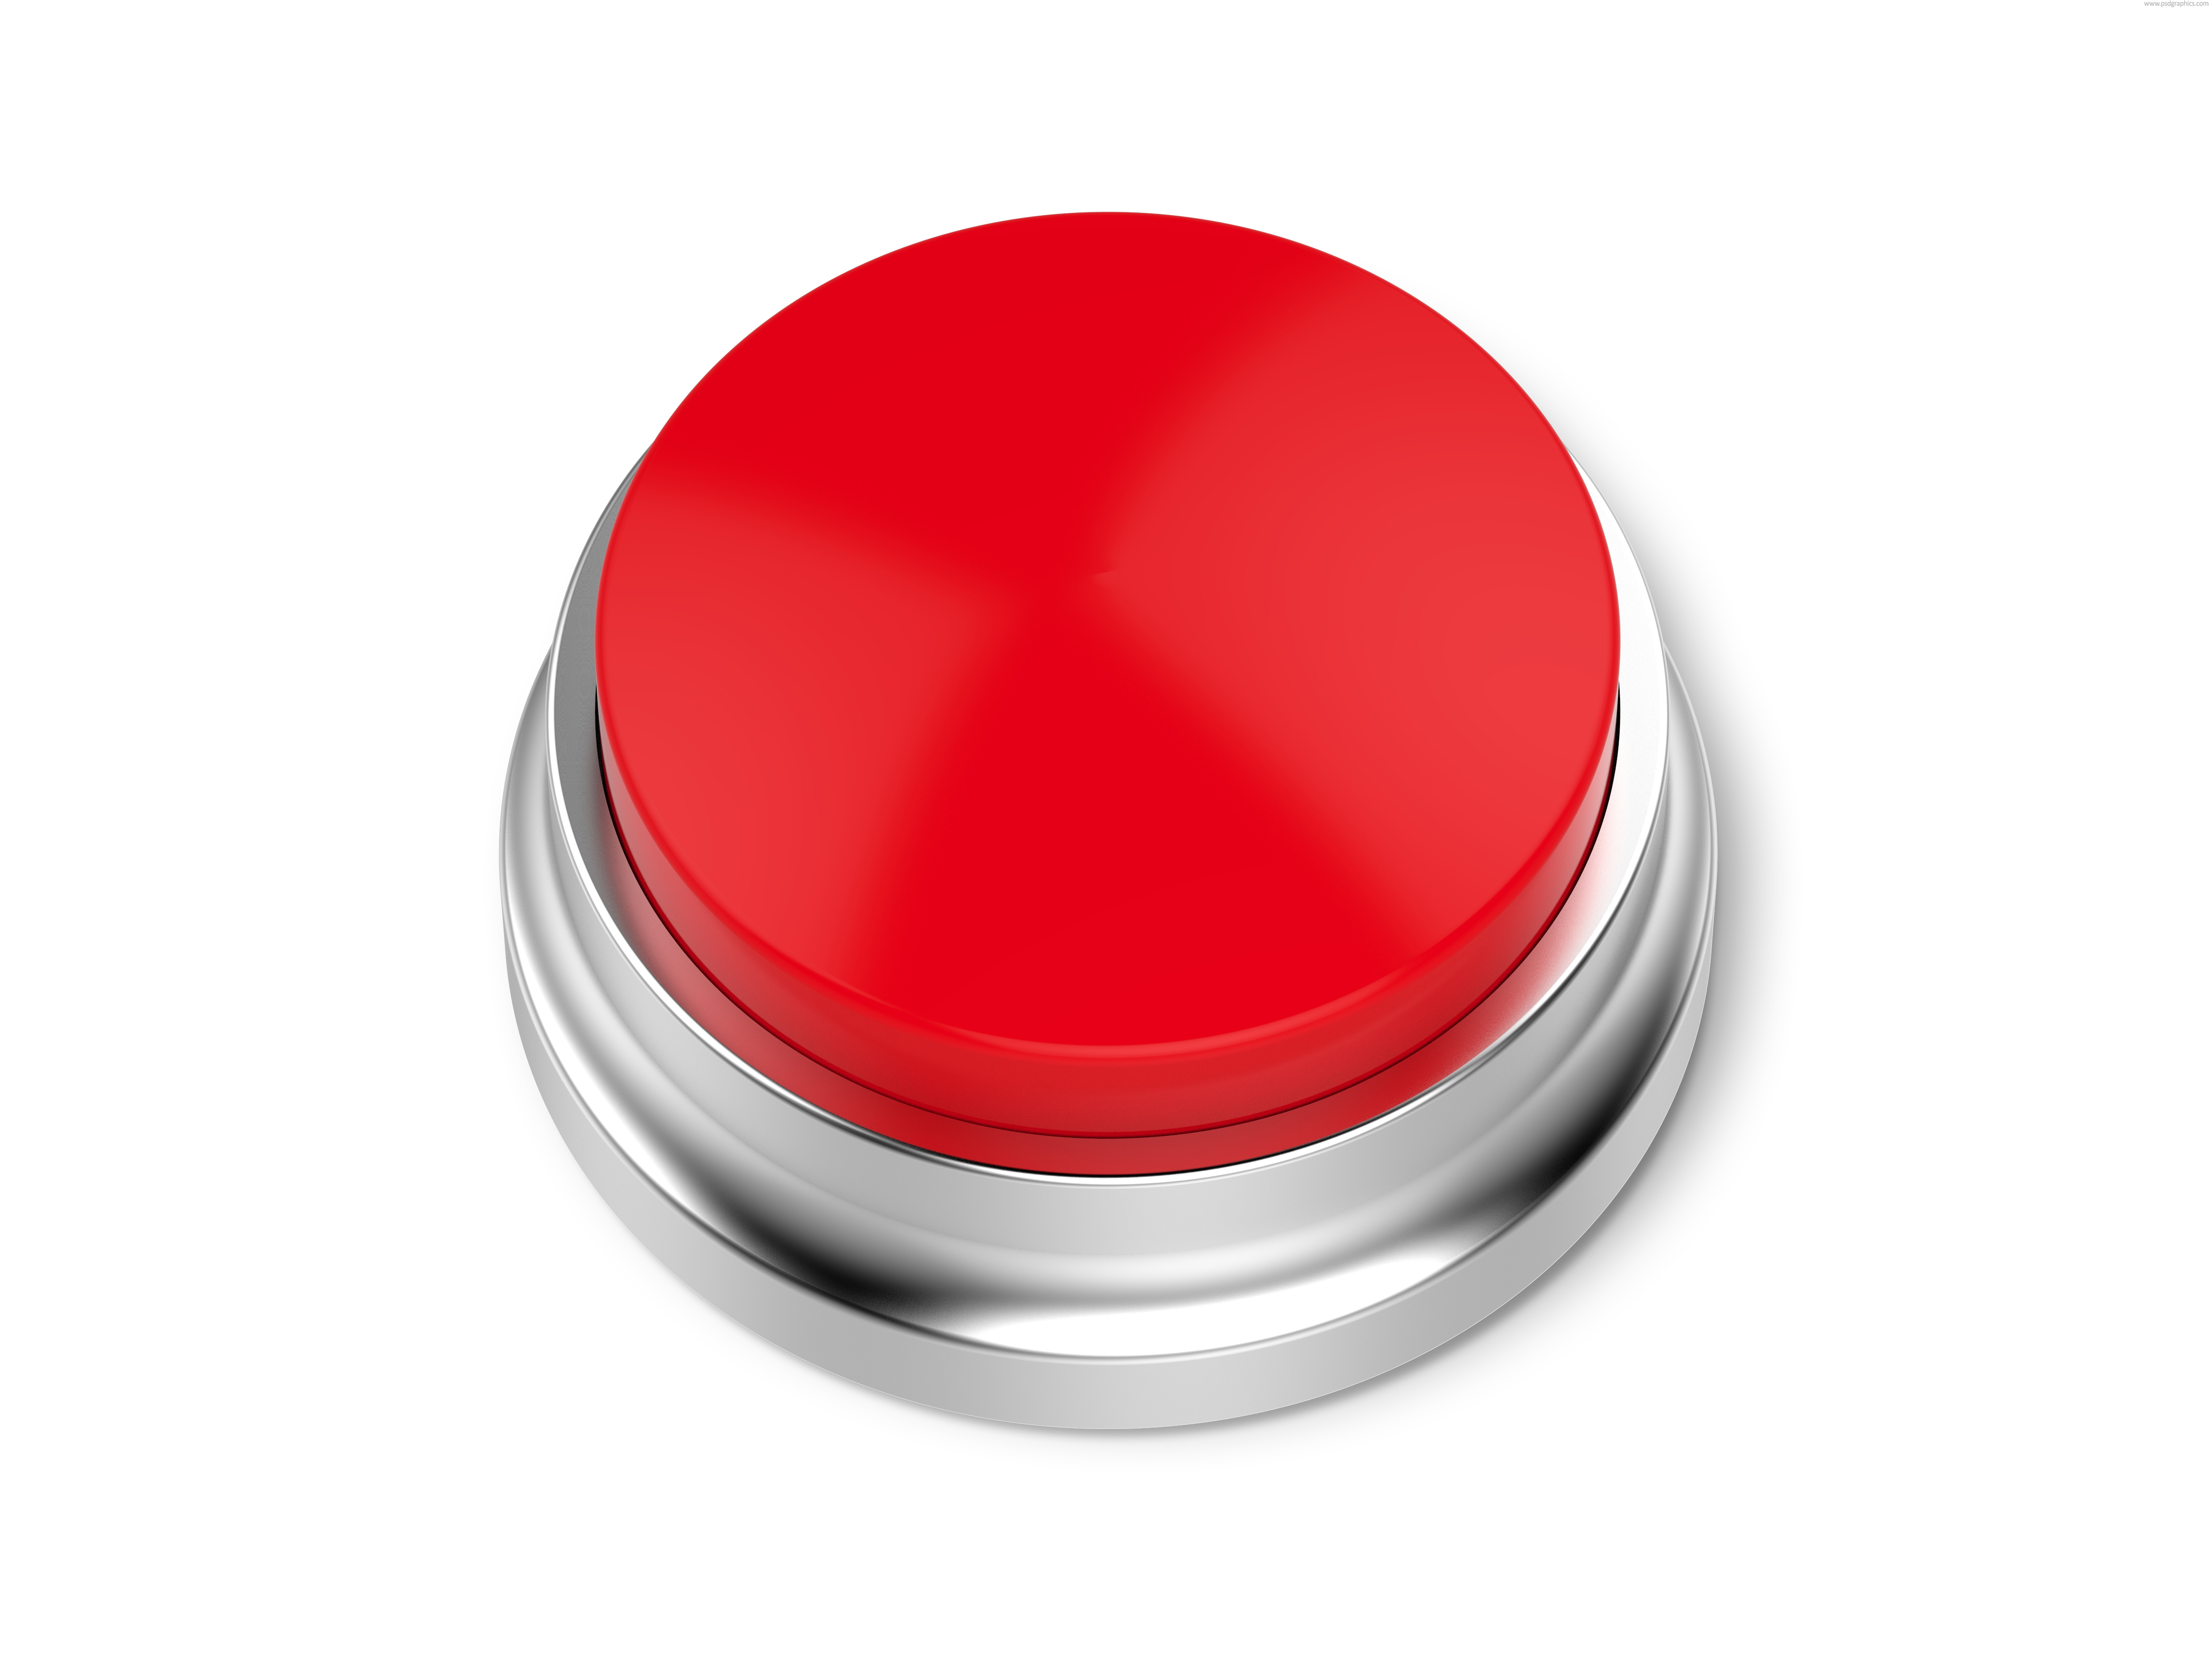 Нажми на реакцию. Красная кнопка. Изображение кнопки. Кнопка без фона. Круглая кнопка.